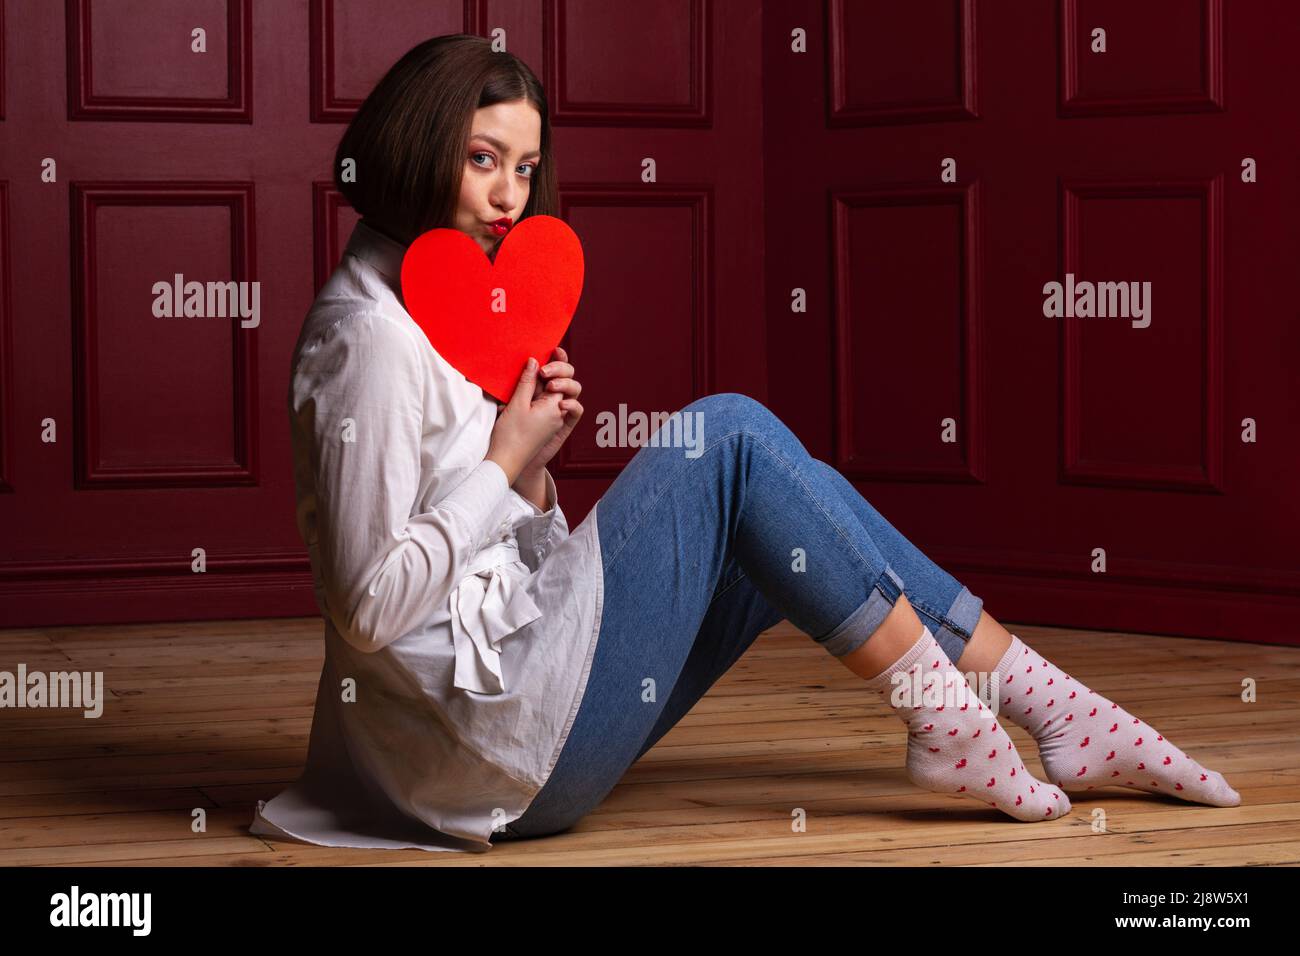 Femme à poil court avec des lèvres formant un baiser assis à côté de l'appareil photo sur un sol en bois et un fond rouge tenant la forme du cœur rouge devant son menton Banque D'Images